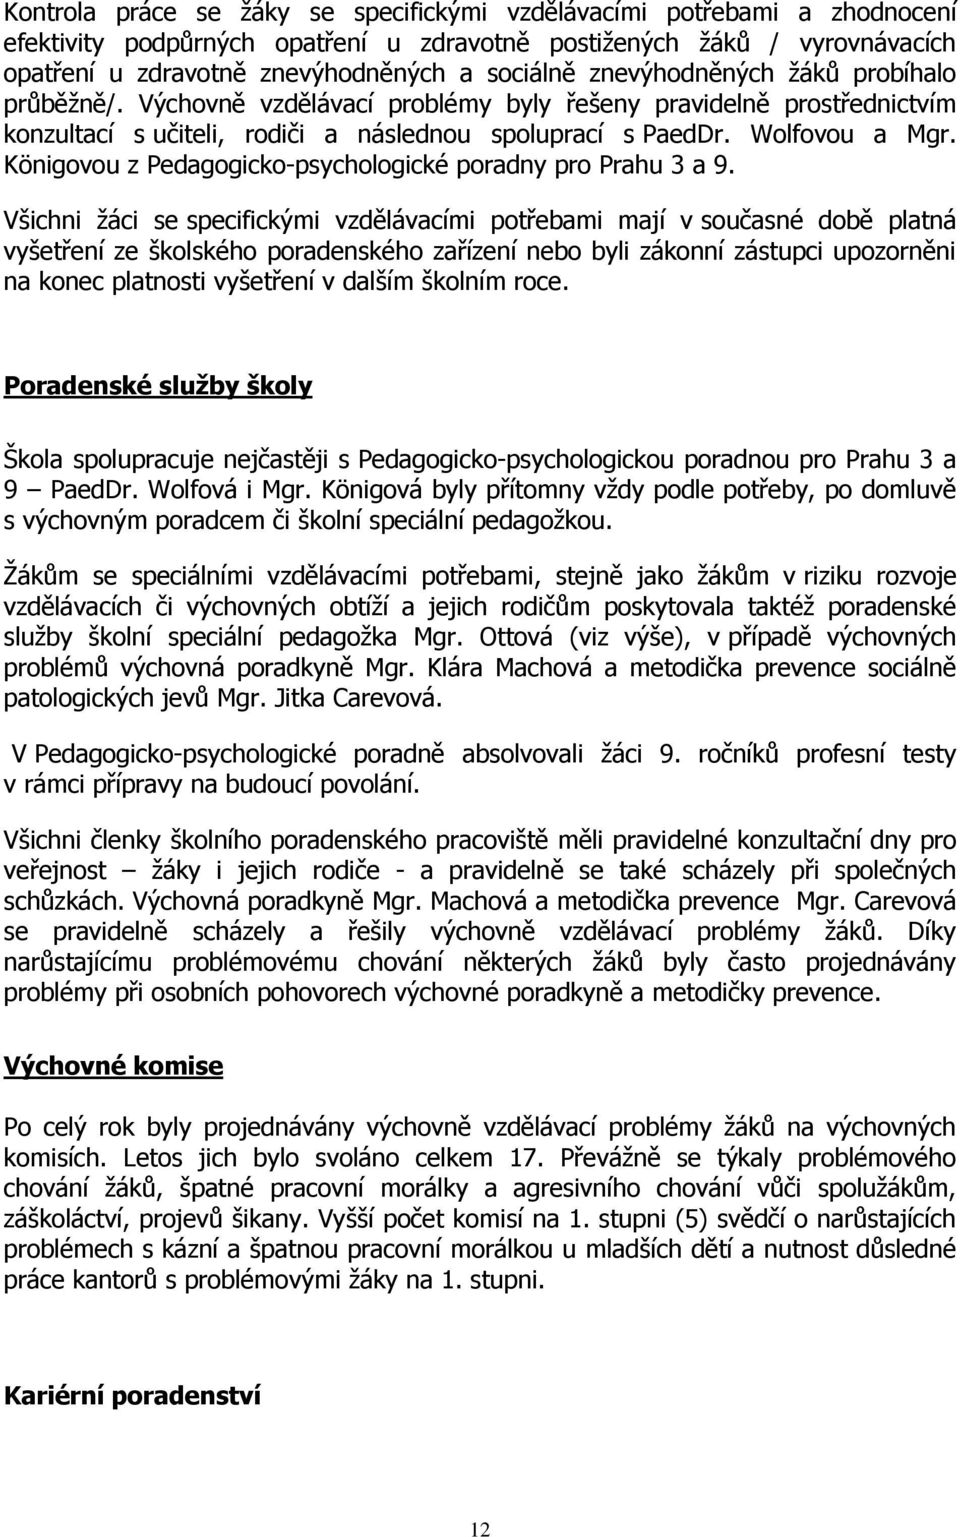 Königovou z Pedagogicko-psychologické poradny pro Prahu 3 a 9.